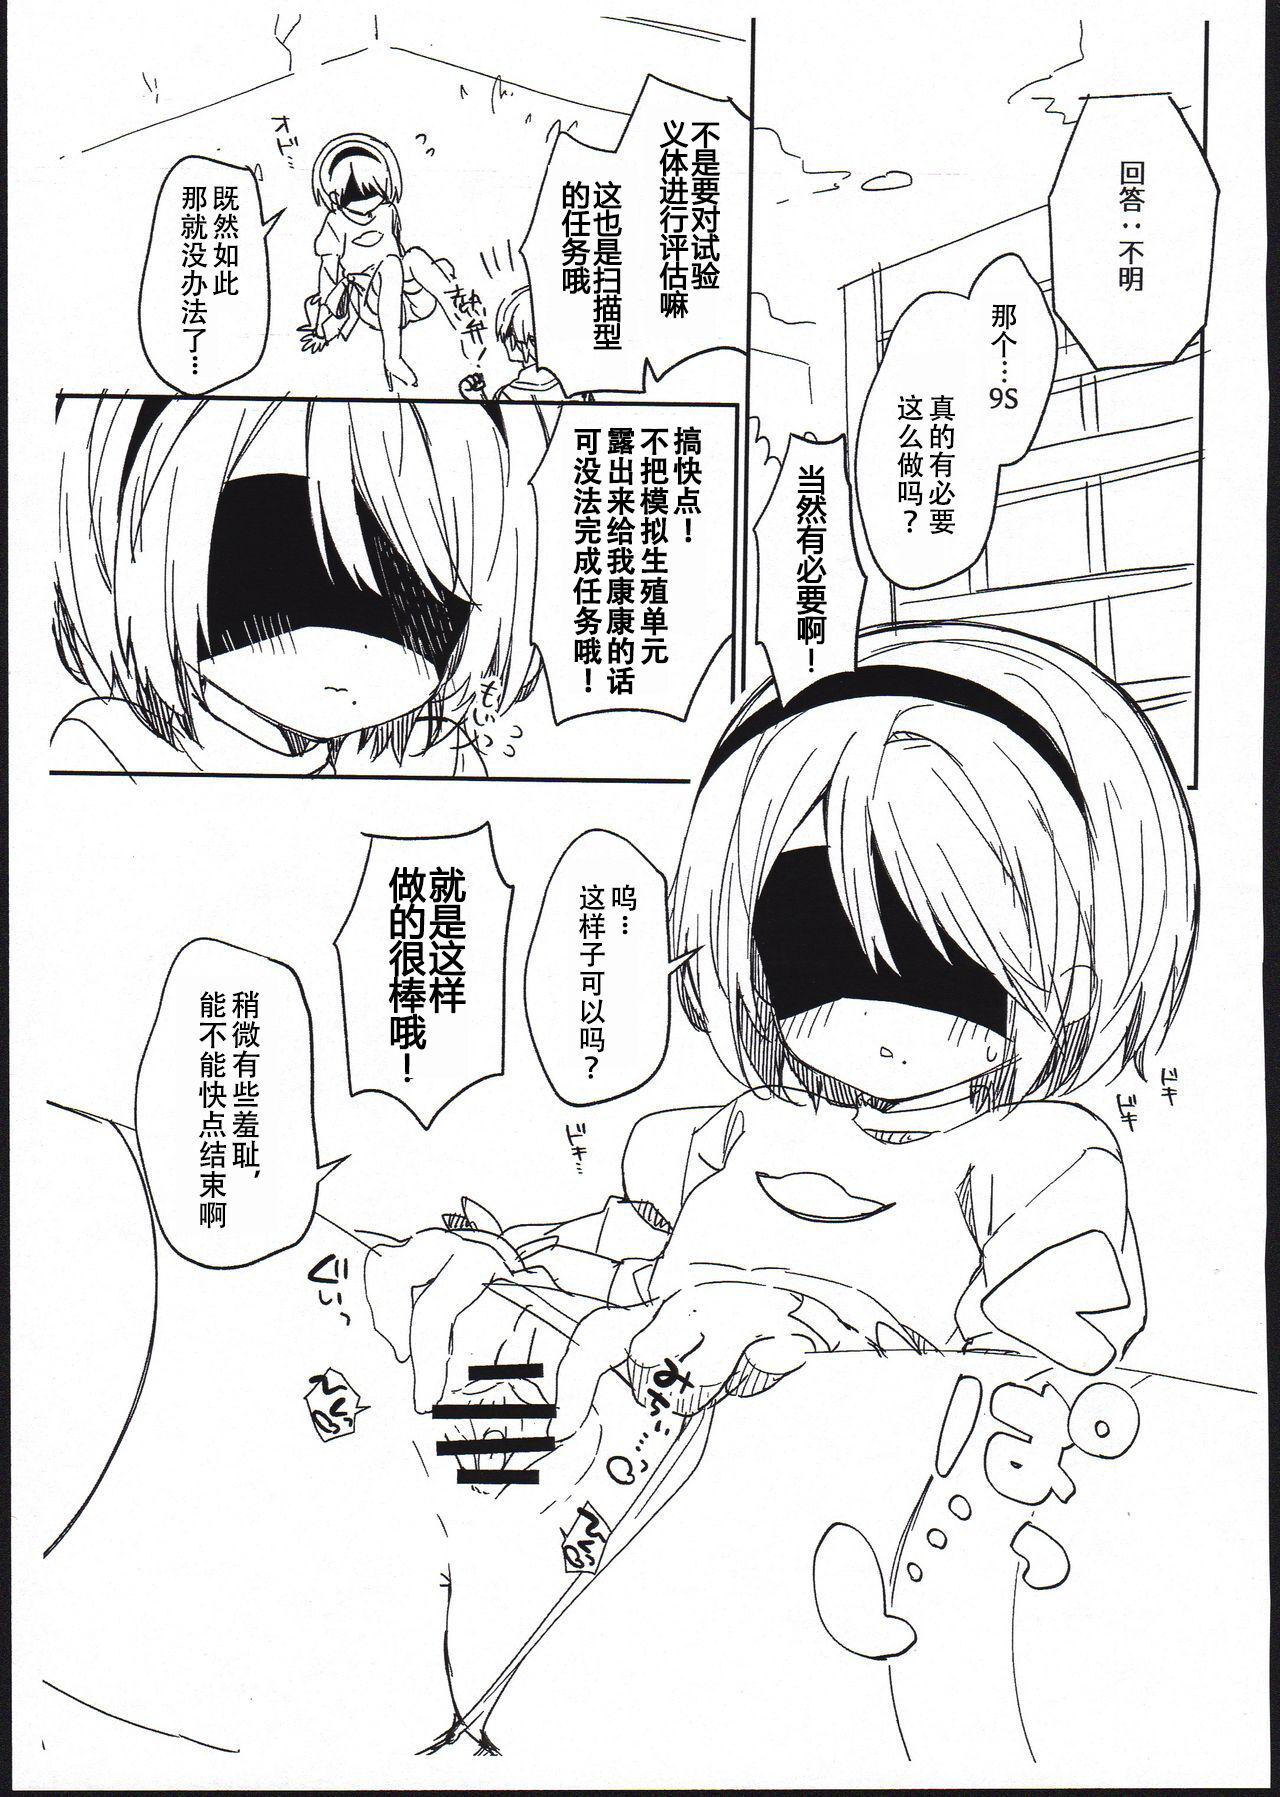 Lesbians YoRHa Kitai 2B no Shoushizaika Gitai Unyou Shiken ni Kansuru Houkoku - Nier automata Tanned - Page 4